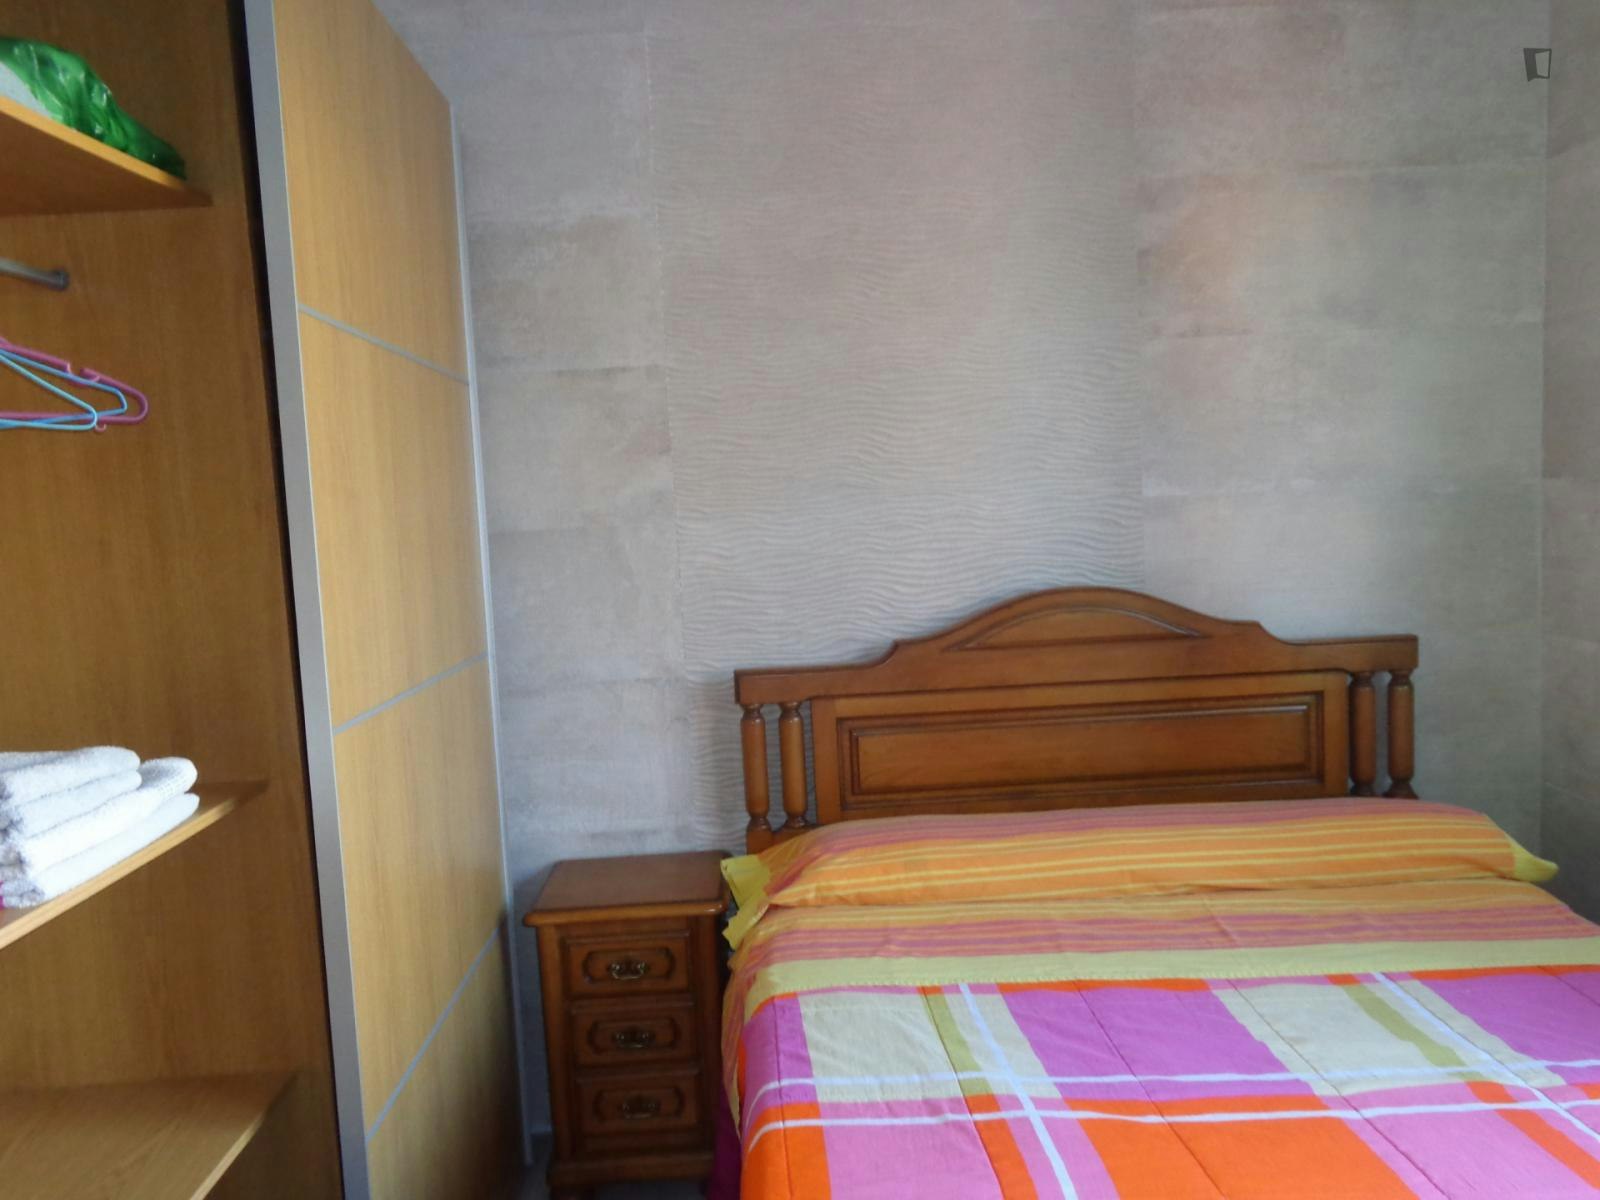 Comfortable single bedroom close to Universidad de Cantabria